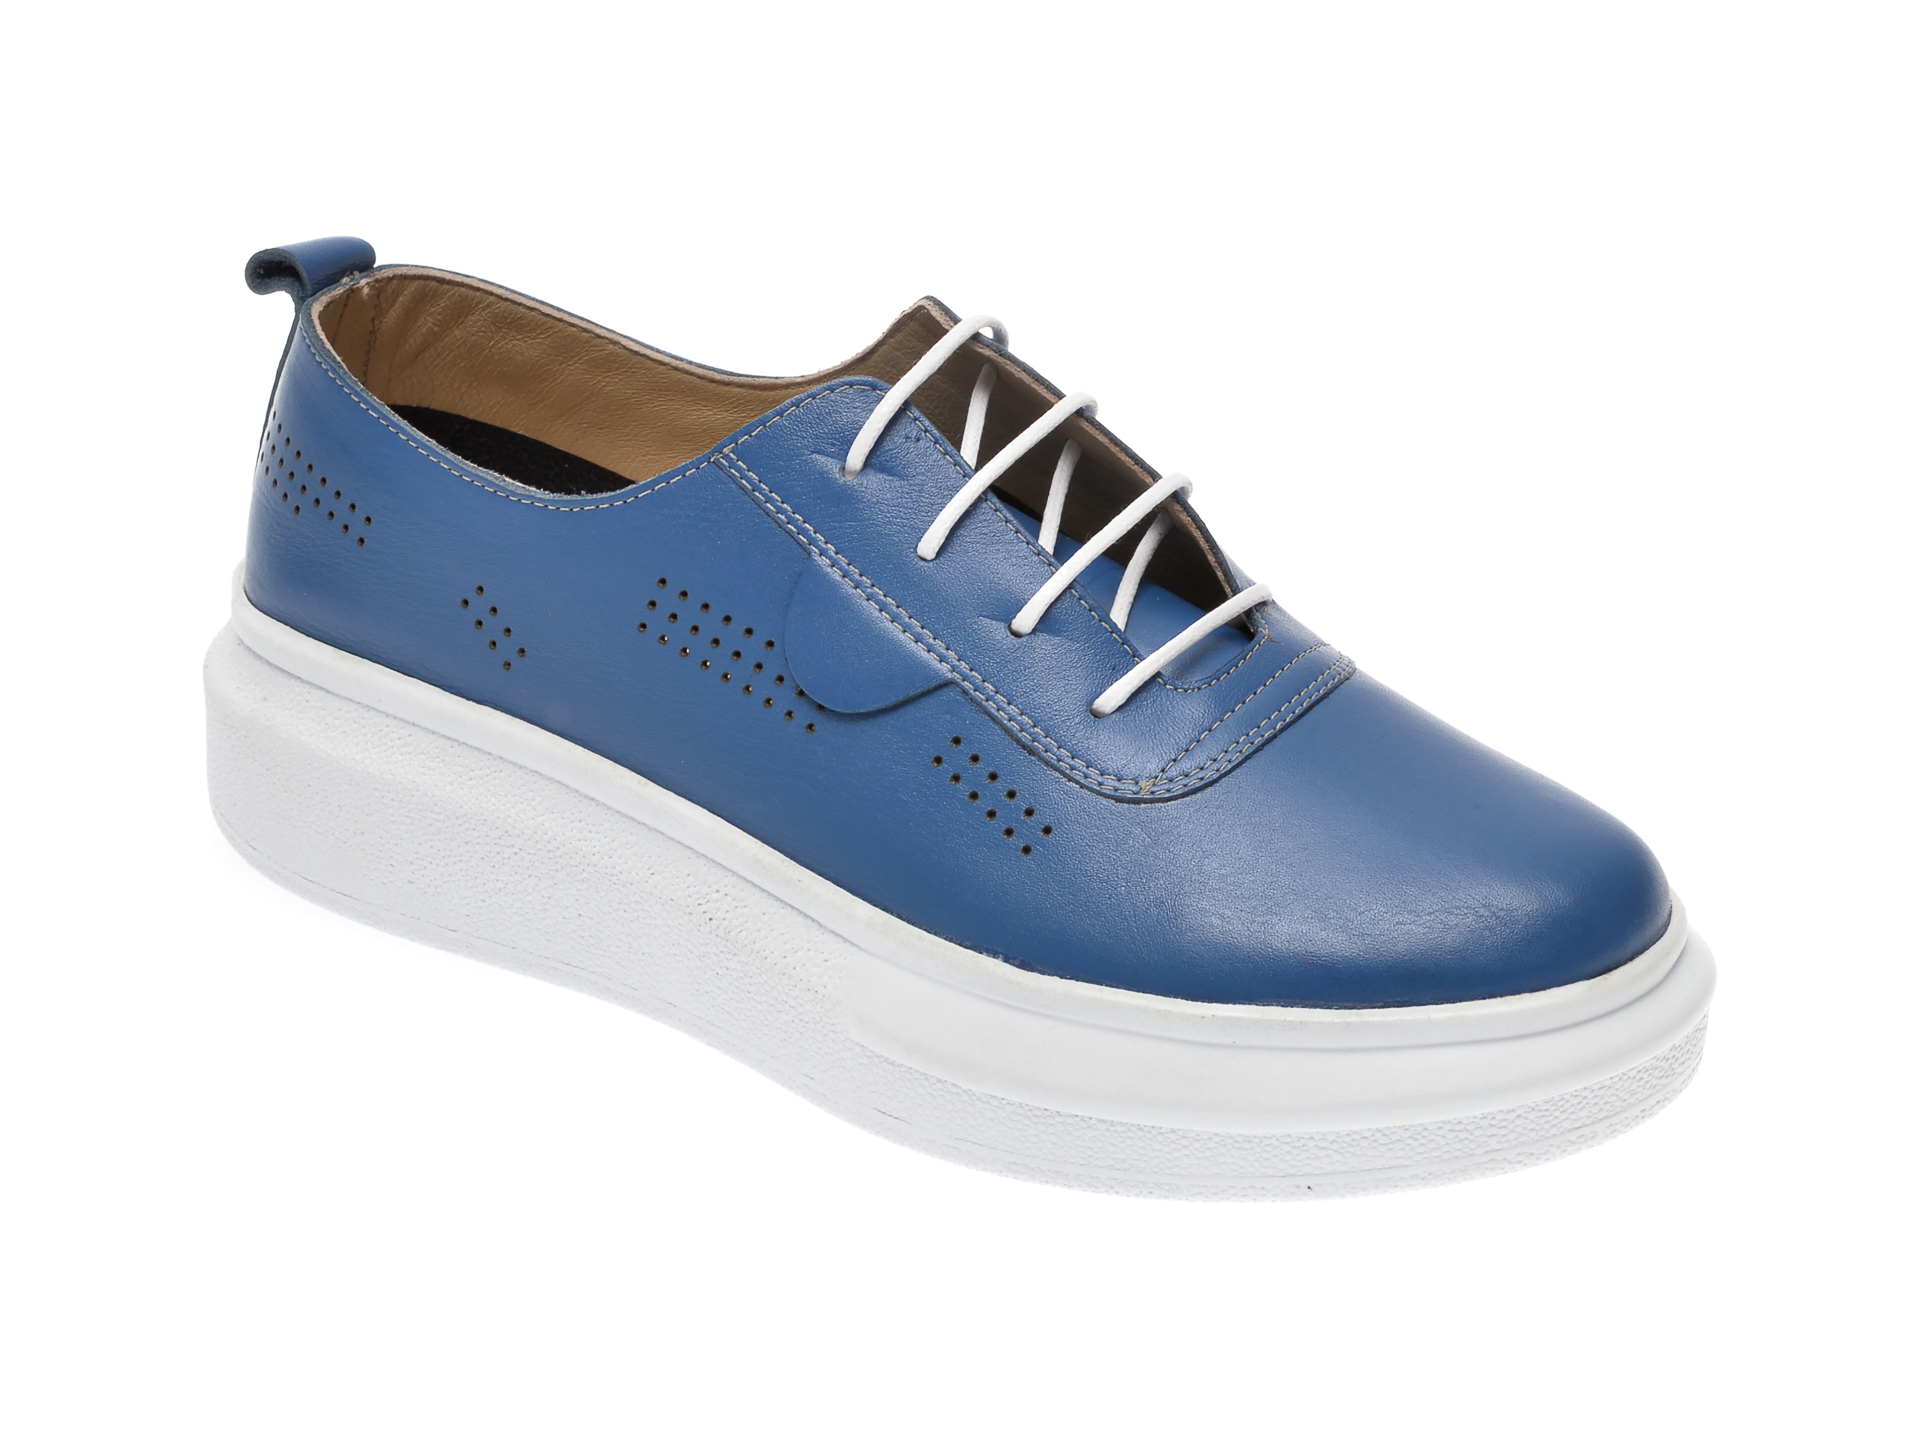 Pantofi PASS COLLECTION albastri, 92100, din piele naturala PASS COLLECTION imagine reduceri